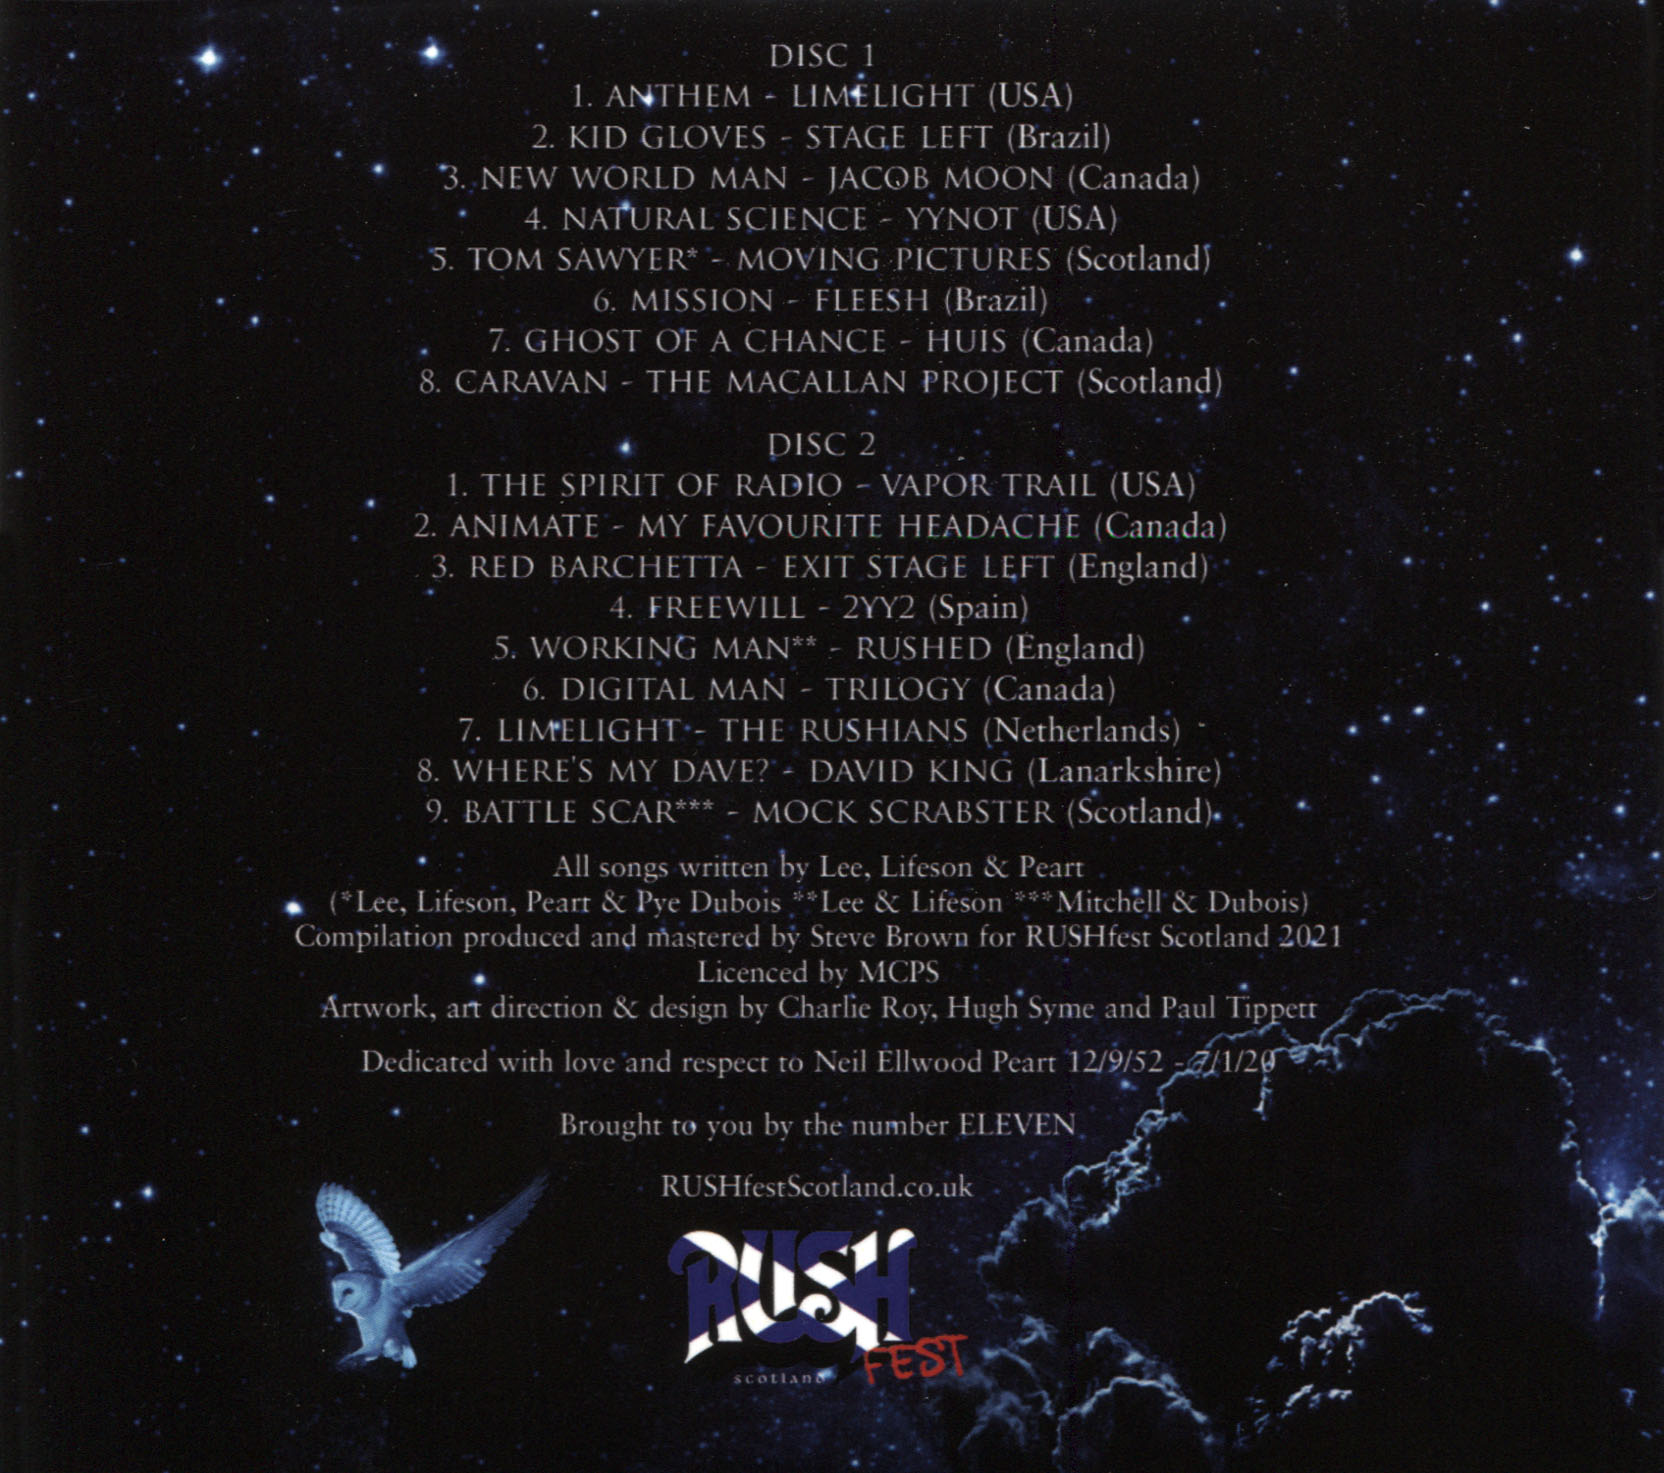 The Stars Look Down: Songs for Neil Volume II - Album Artwork